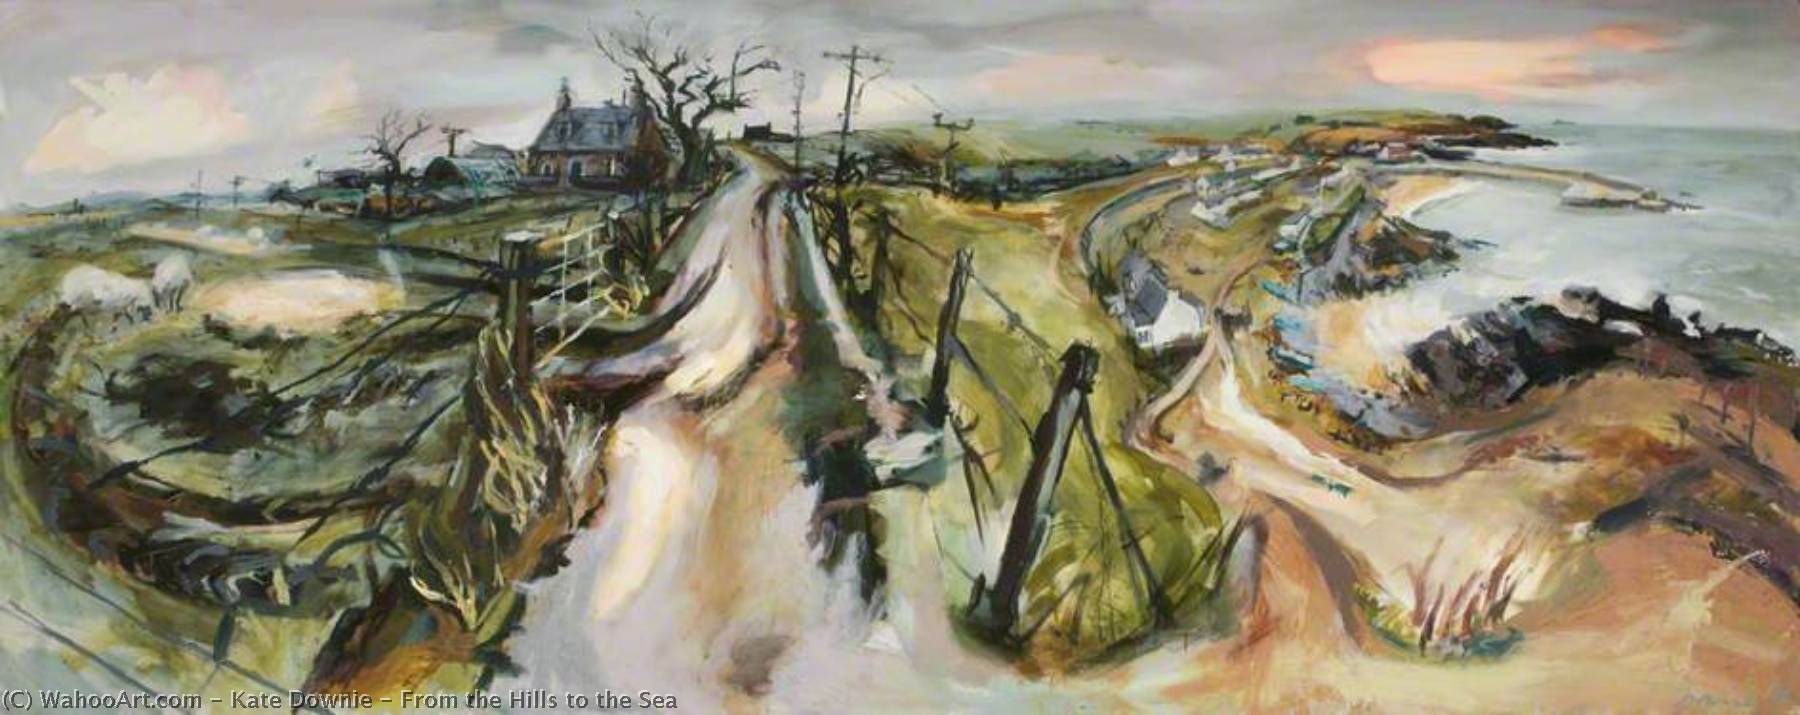 Wikioo.org - Bách khoa toàn thư về mỹ thuật - Vẽ tranh, Tác phẩm nghệ thuật Kate Downie - From the Hills to the Sea